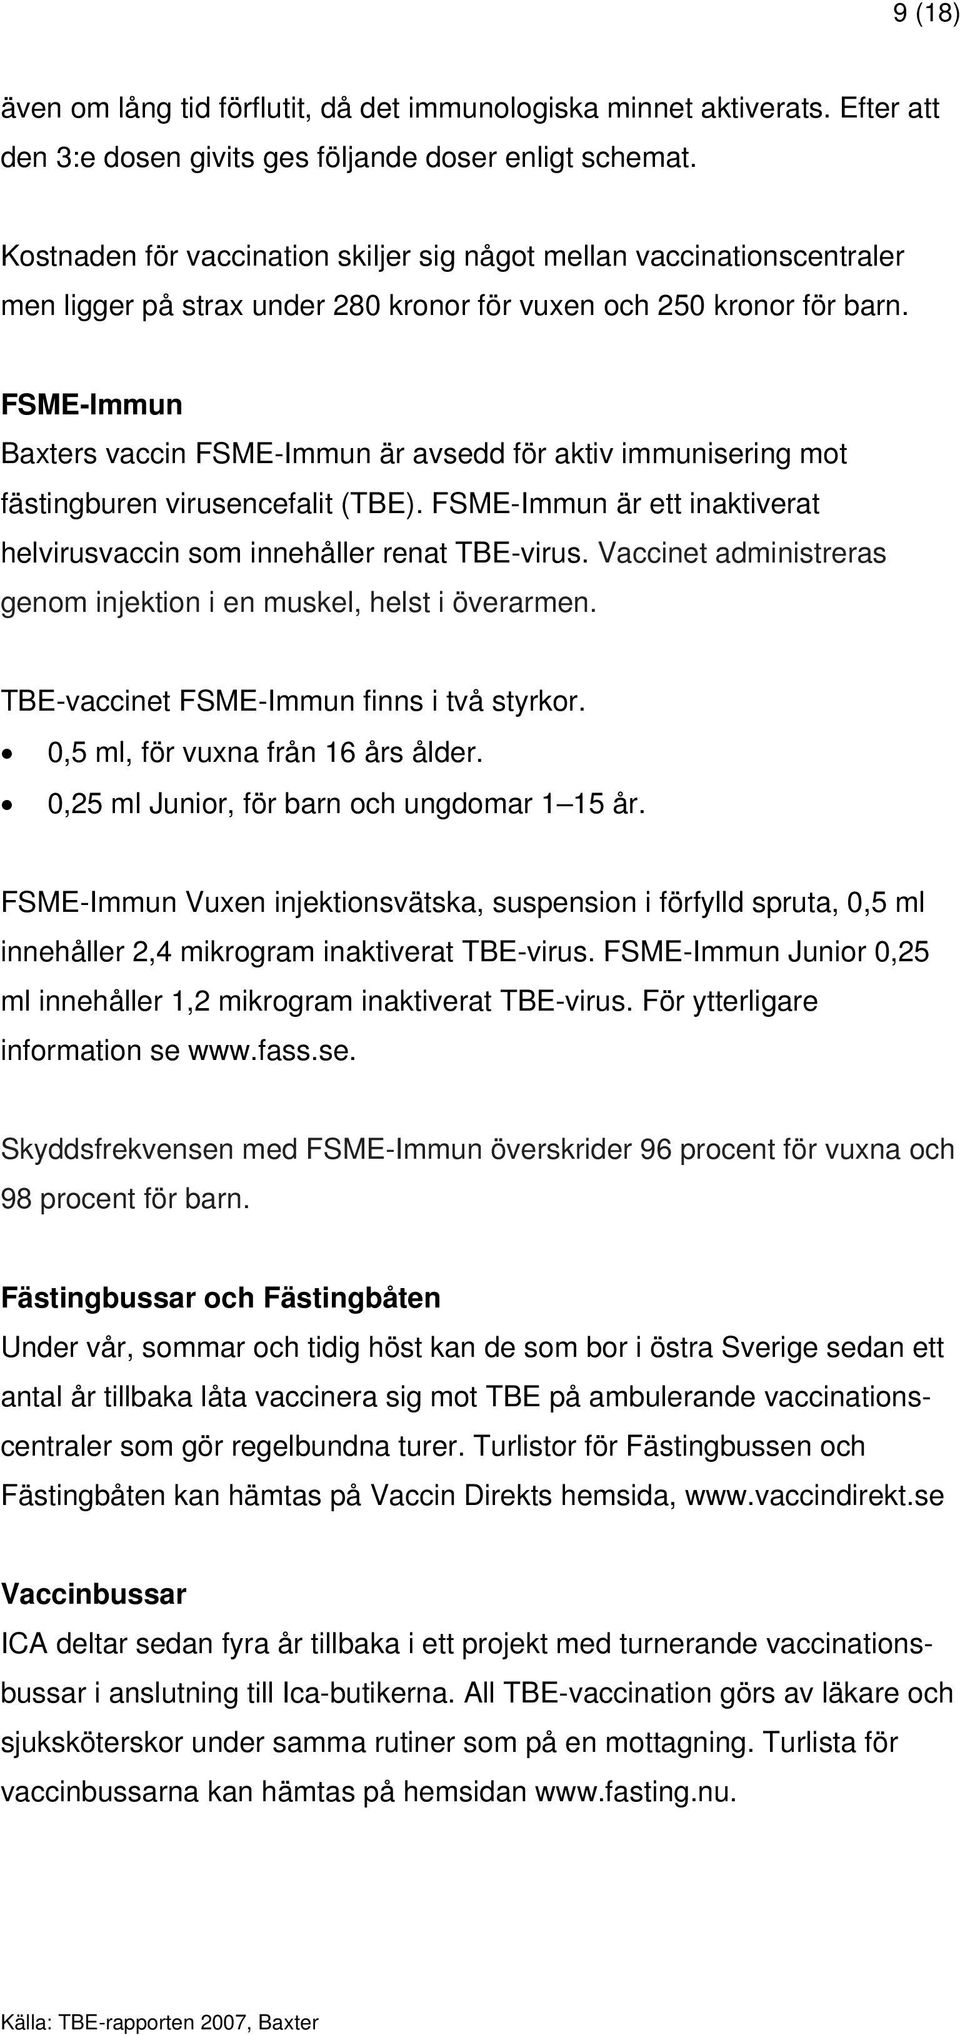 FSME-Immun Baxters vaccin FSME-Immun är avsedd för aktiv immunisering mot fästingburen virusencefalit (TBE). FSME-Immun är ett inaktiverat helvirusvaccin som innehåller renat TBE-virus.